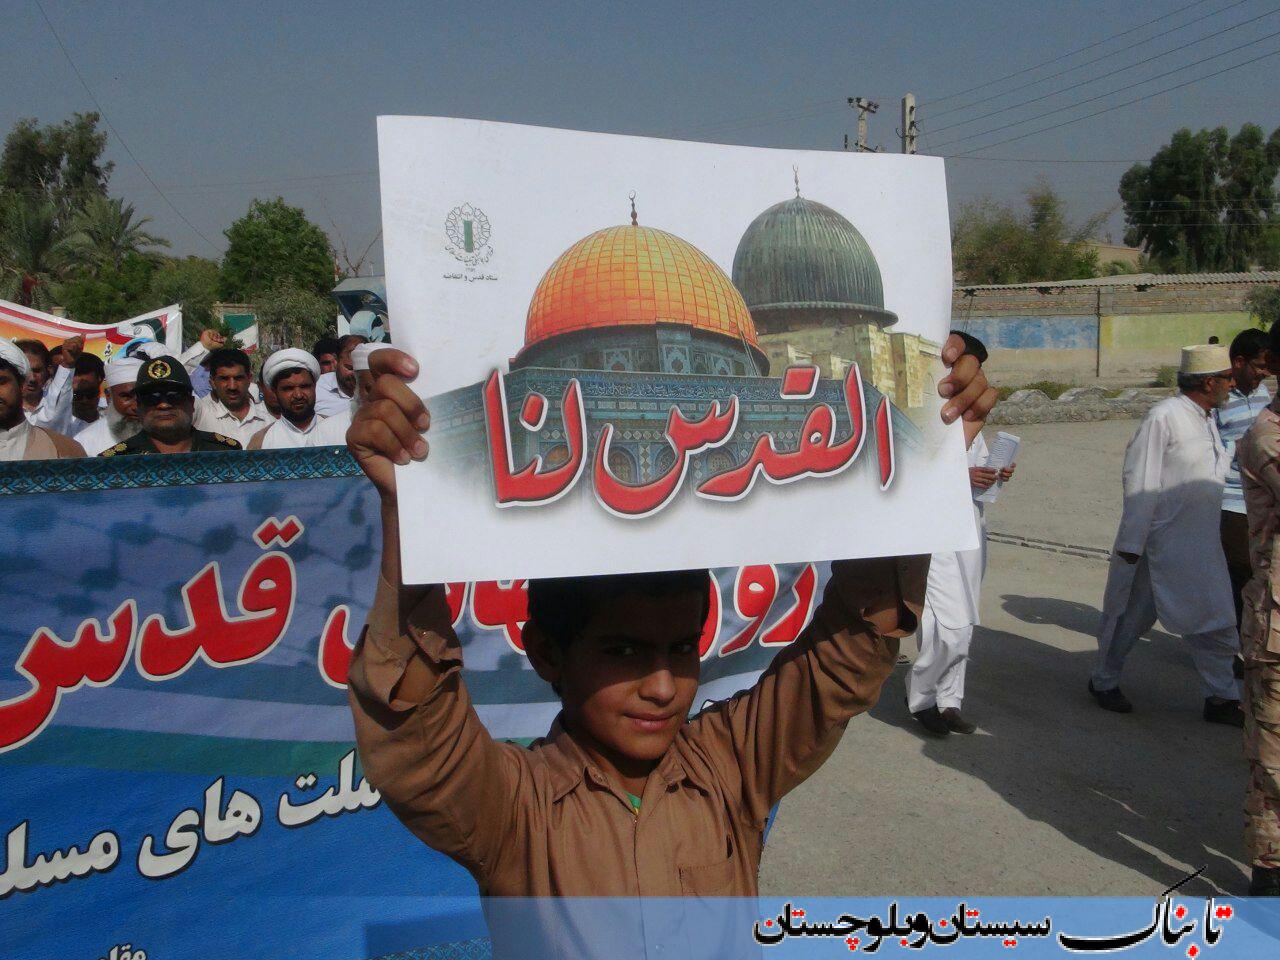 شیعه و سنی یکصدا برای قدس/ گزارش تصویری از شهرهای مختلف سیستان و بلوچستان